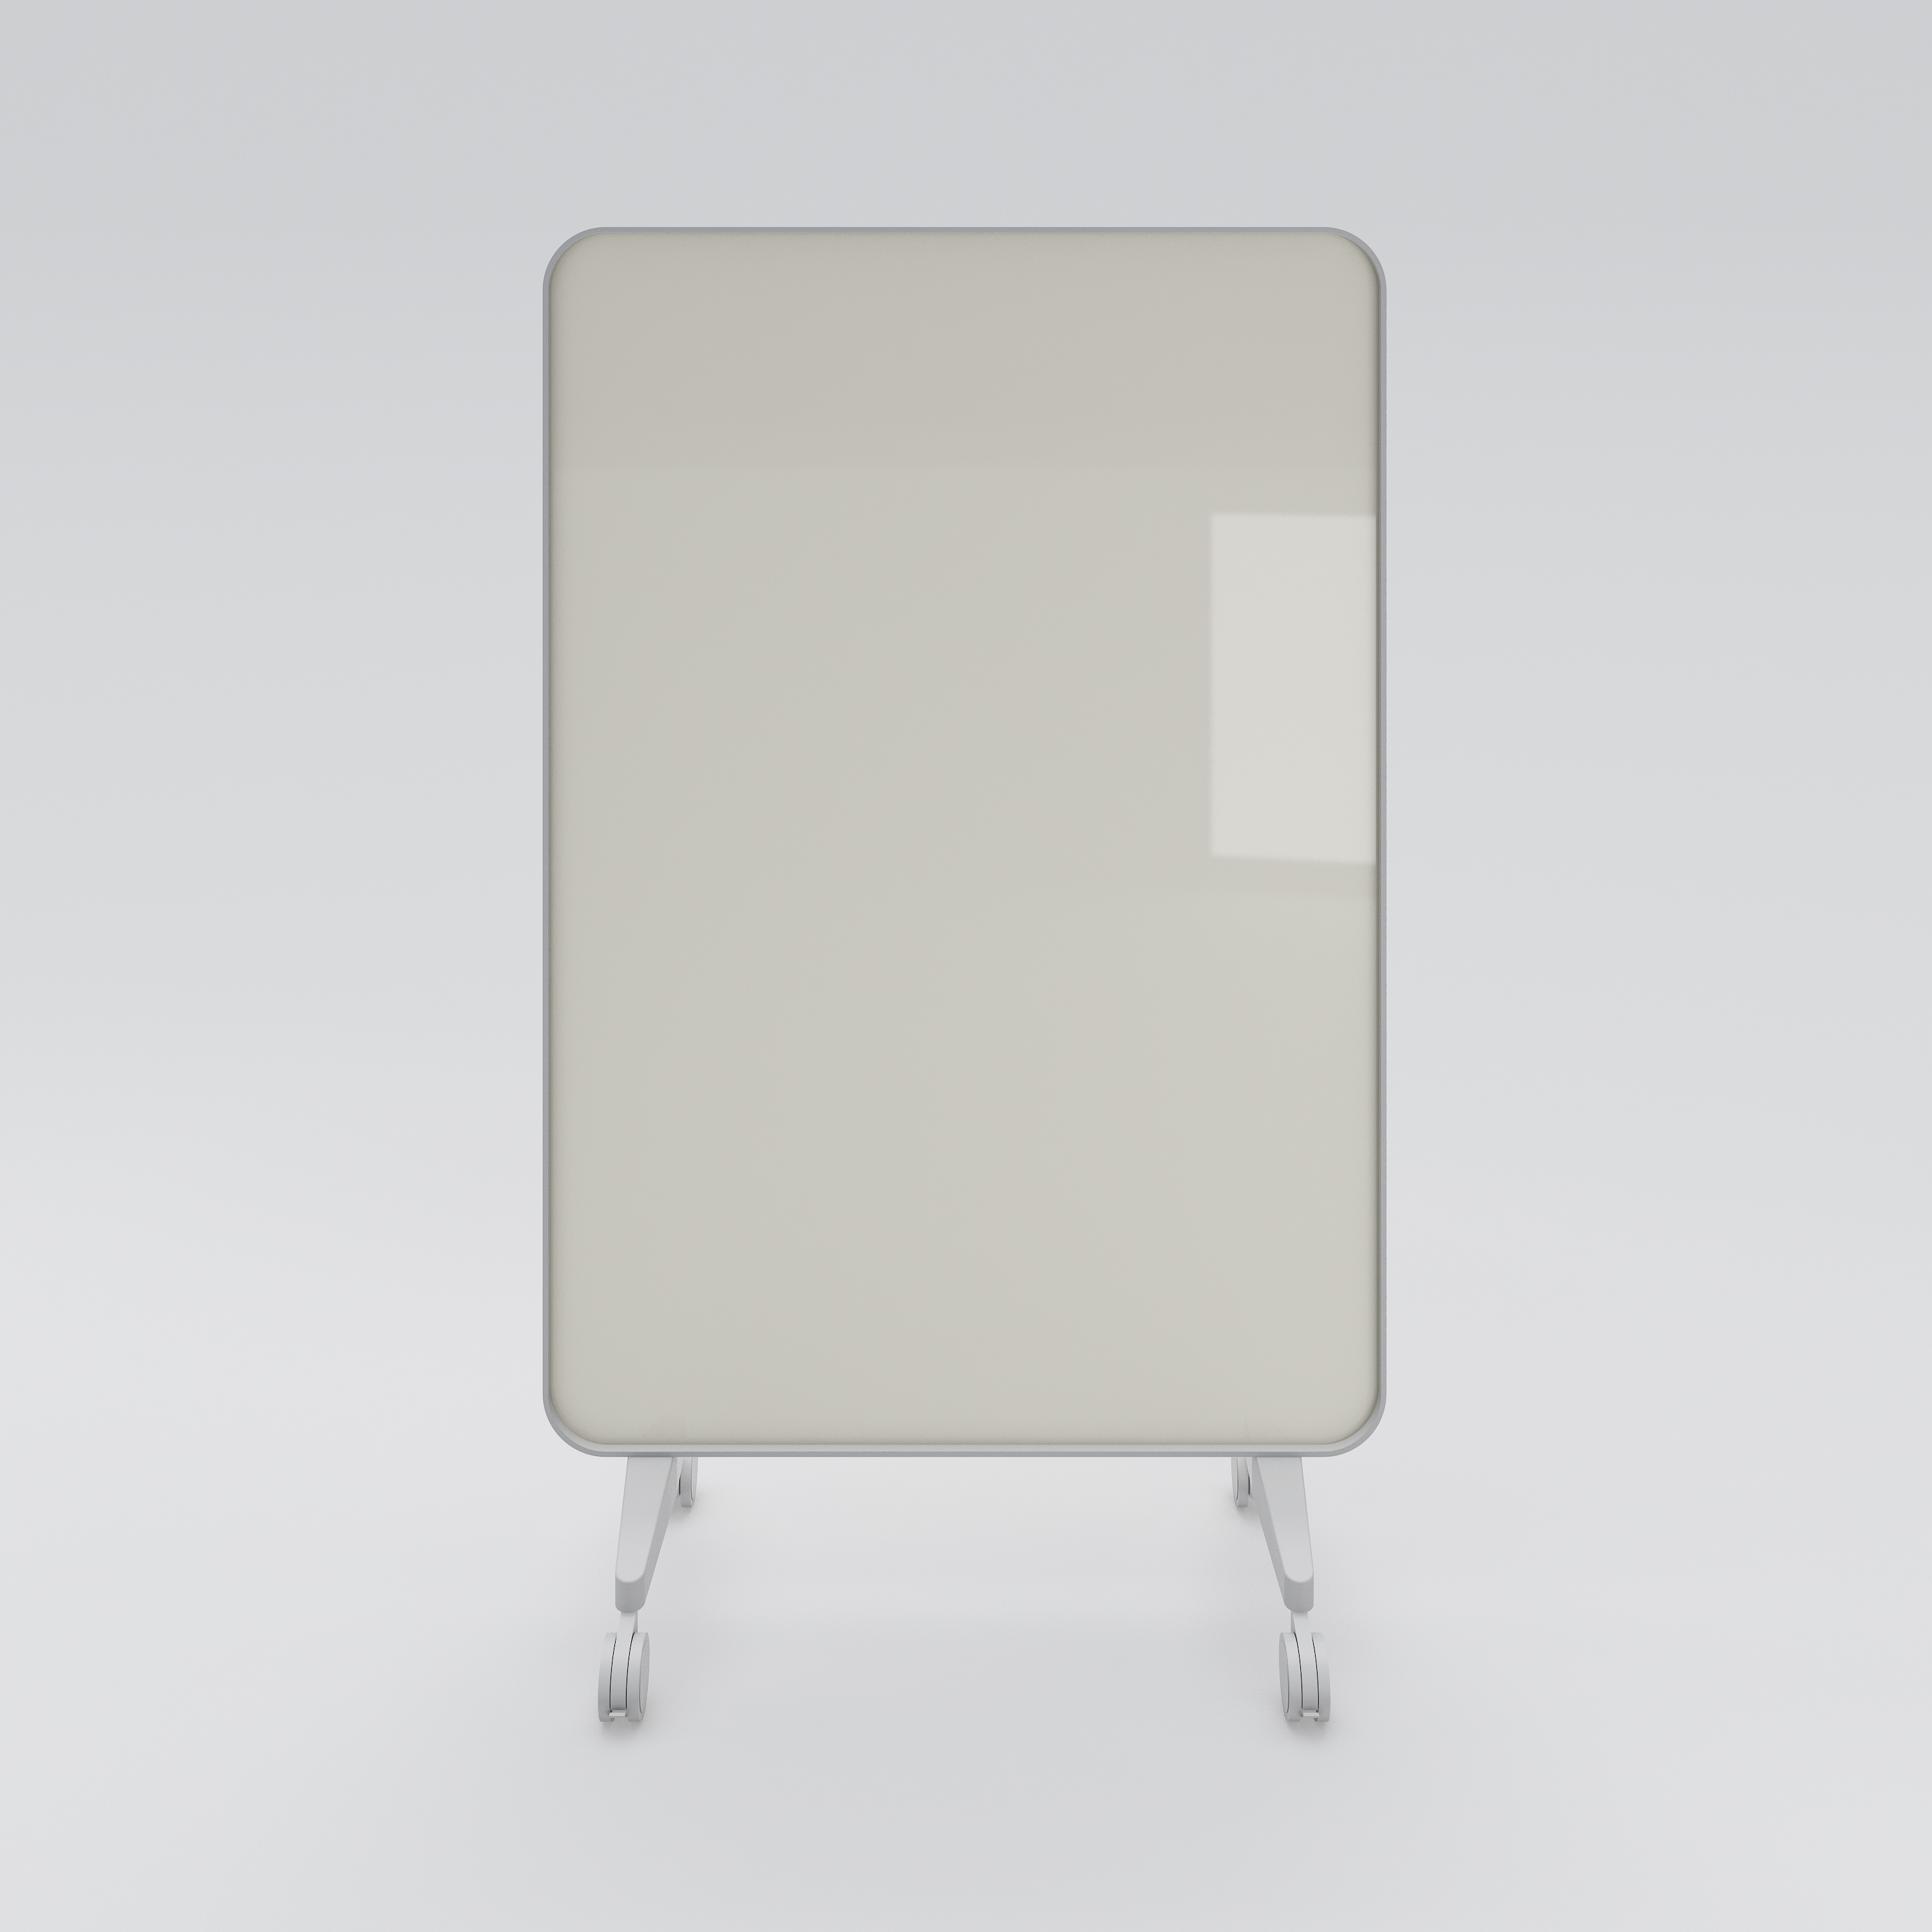 Mobile whiteboard Frame, 1200x1960, metal frame, light gray glass